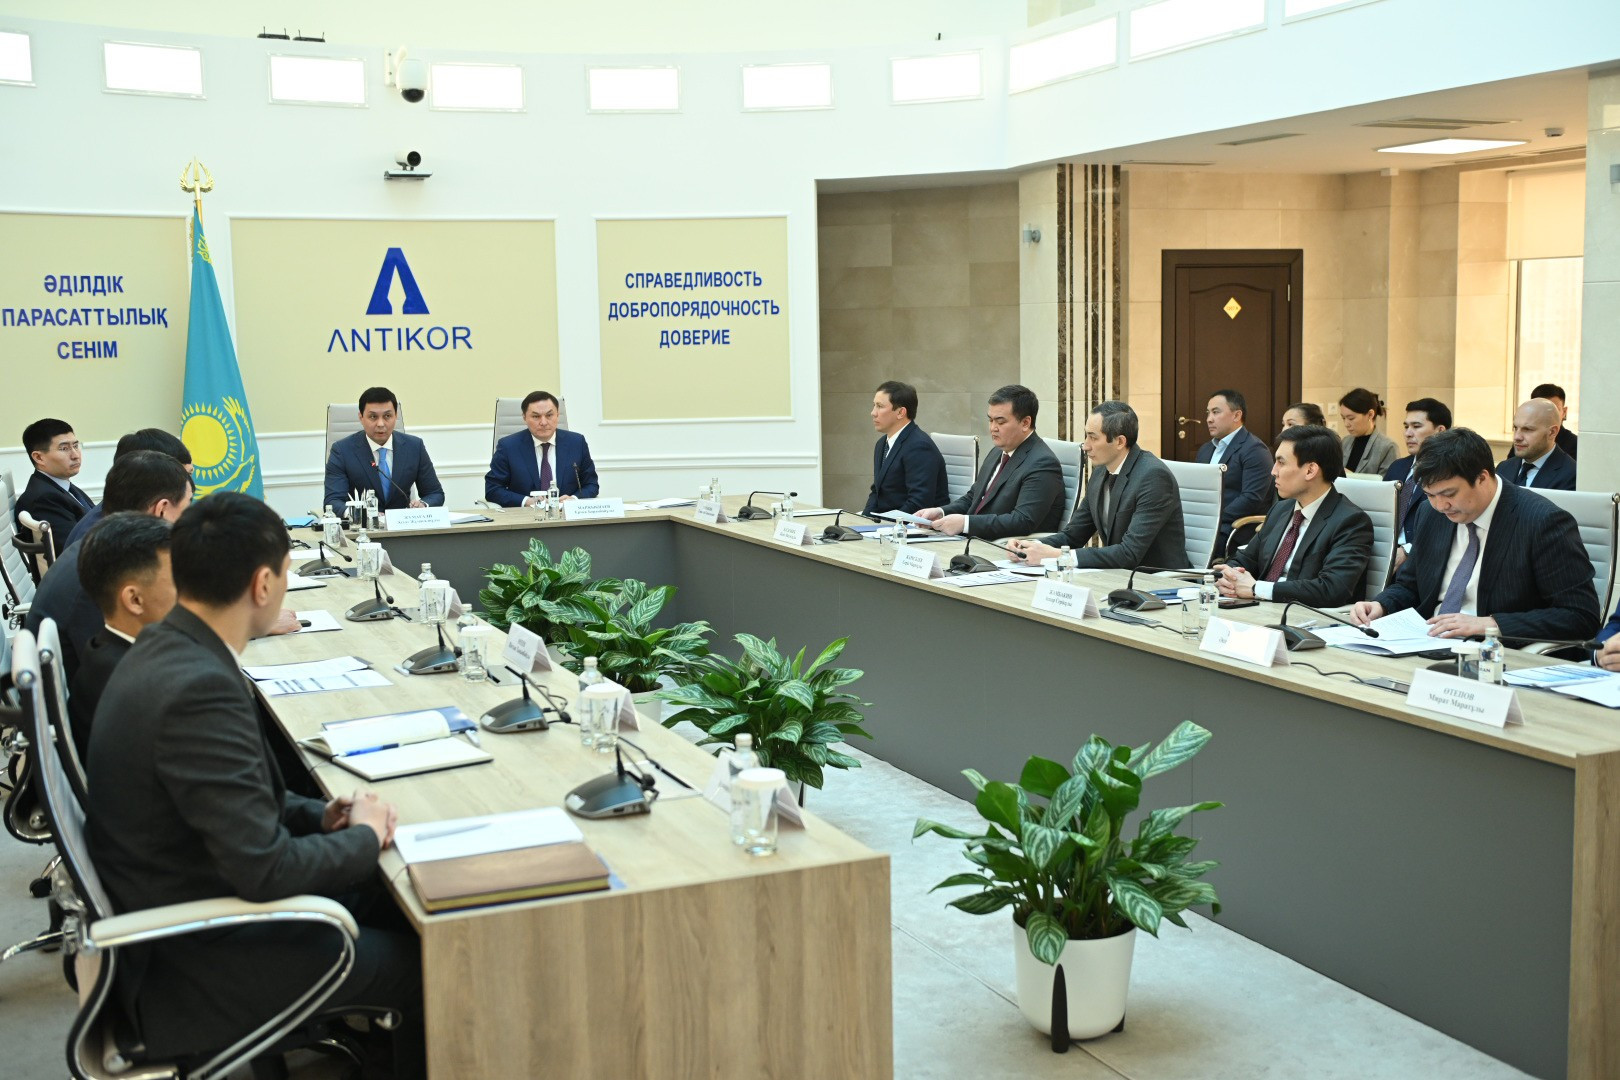 Подробнее о статье Президент НОК РК Геннадий Головкин принял участие в совещании Агентства по противодействию коррупции РК